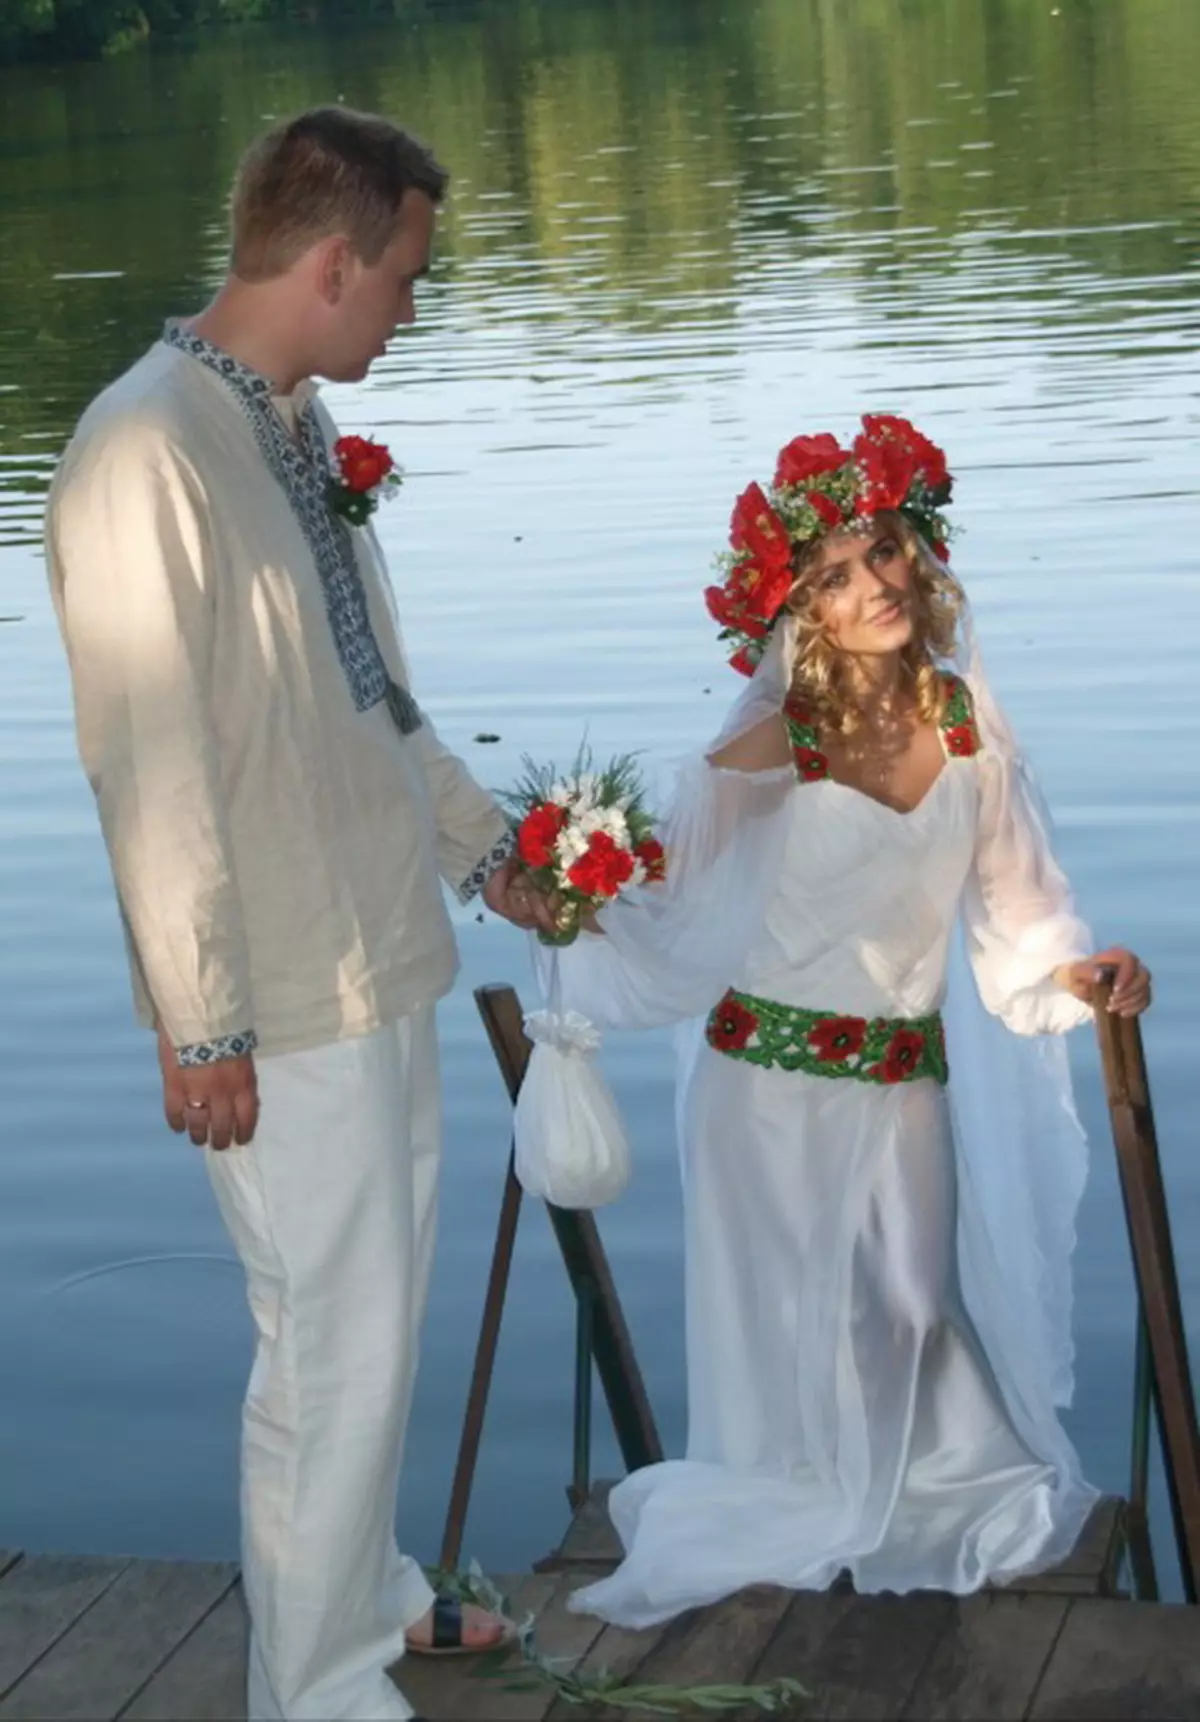 Wedding in style style (73 foto): Registrasi perayaan ing rakyat Rusia lan gaya slavonic lawas, nahan kawinan sing stylized ing musim panas lan mangsa 7844_30